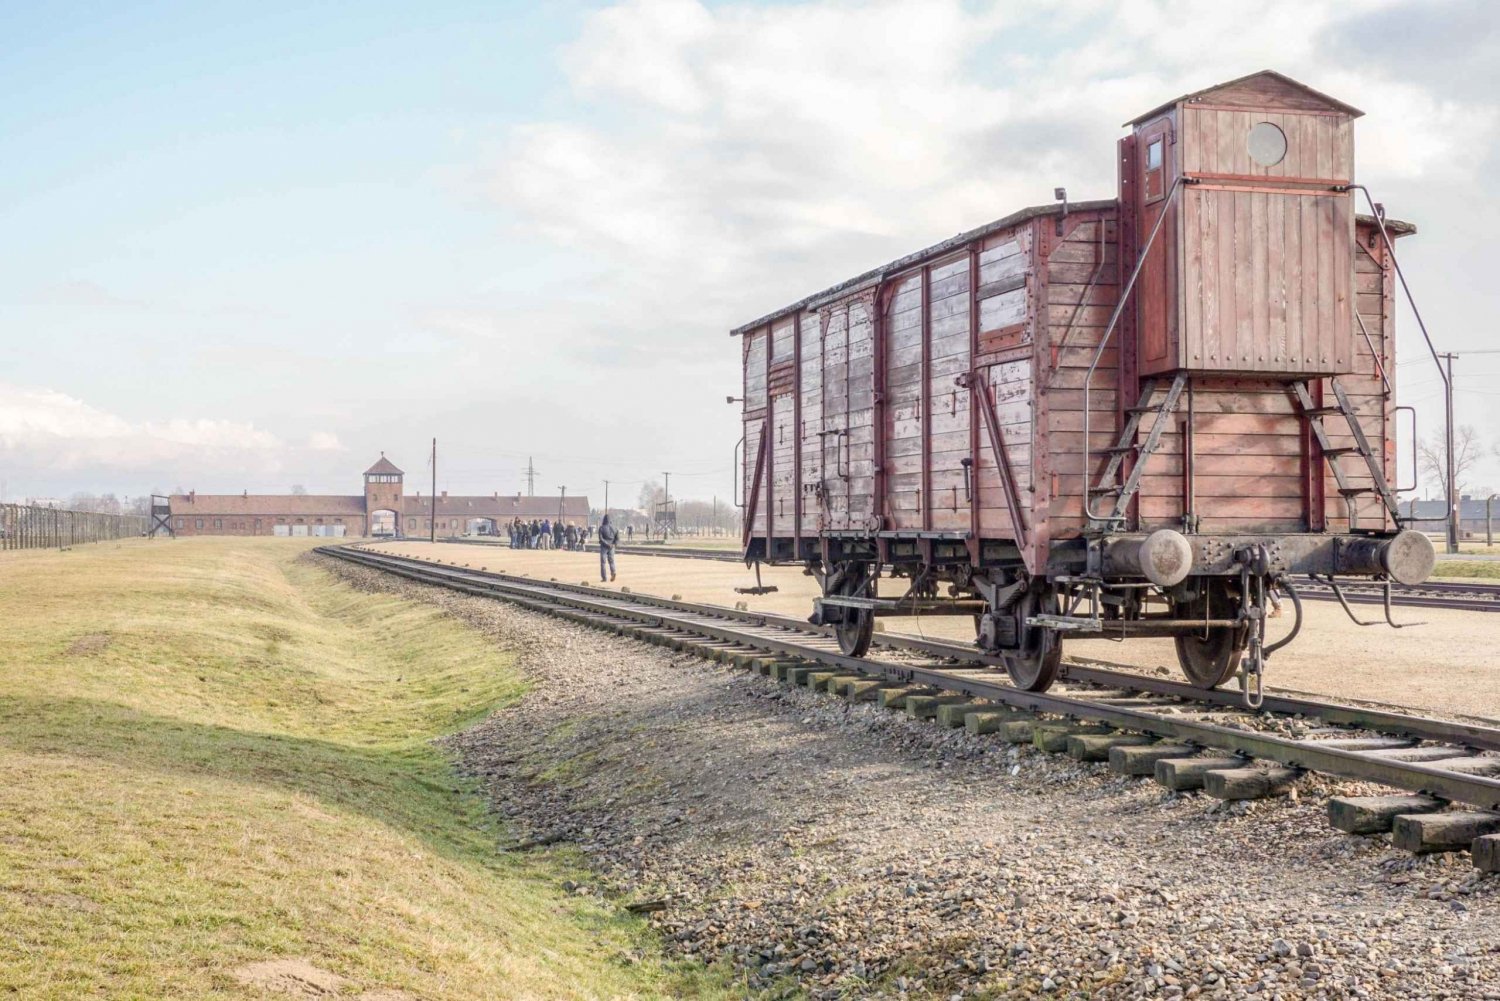 Cracóvia: Visita guiada ao Museu Auschwitz Birkenau com traslado